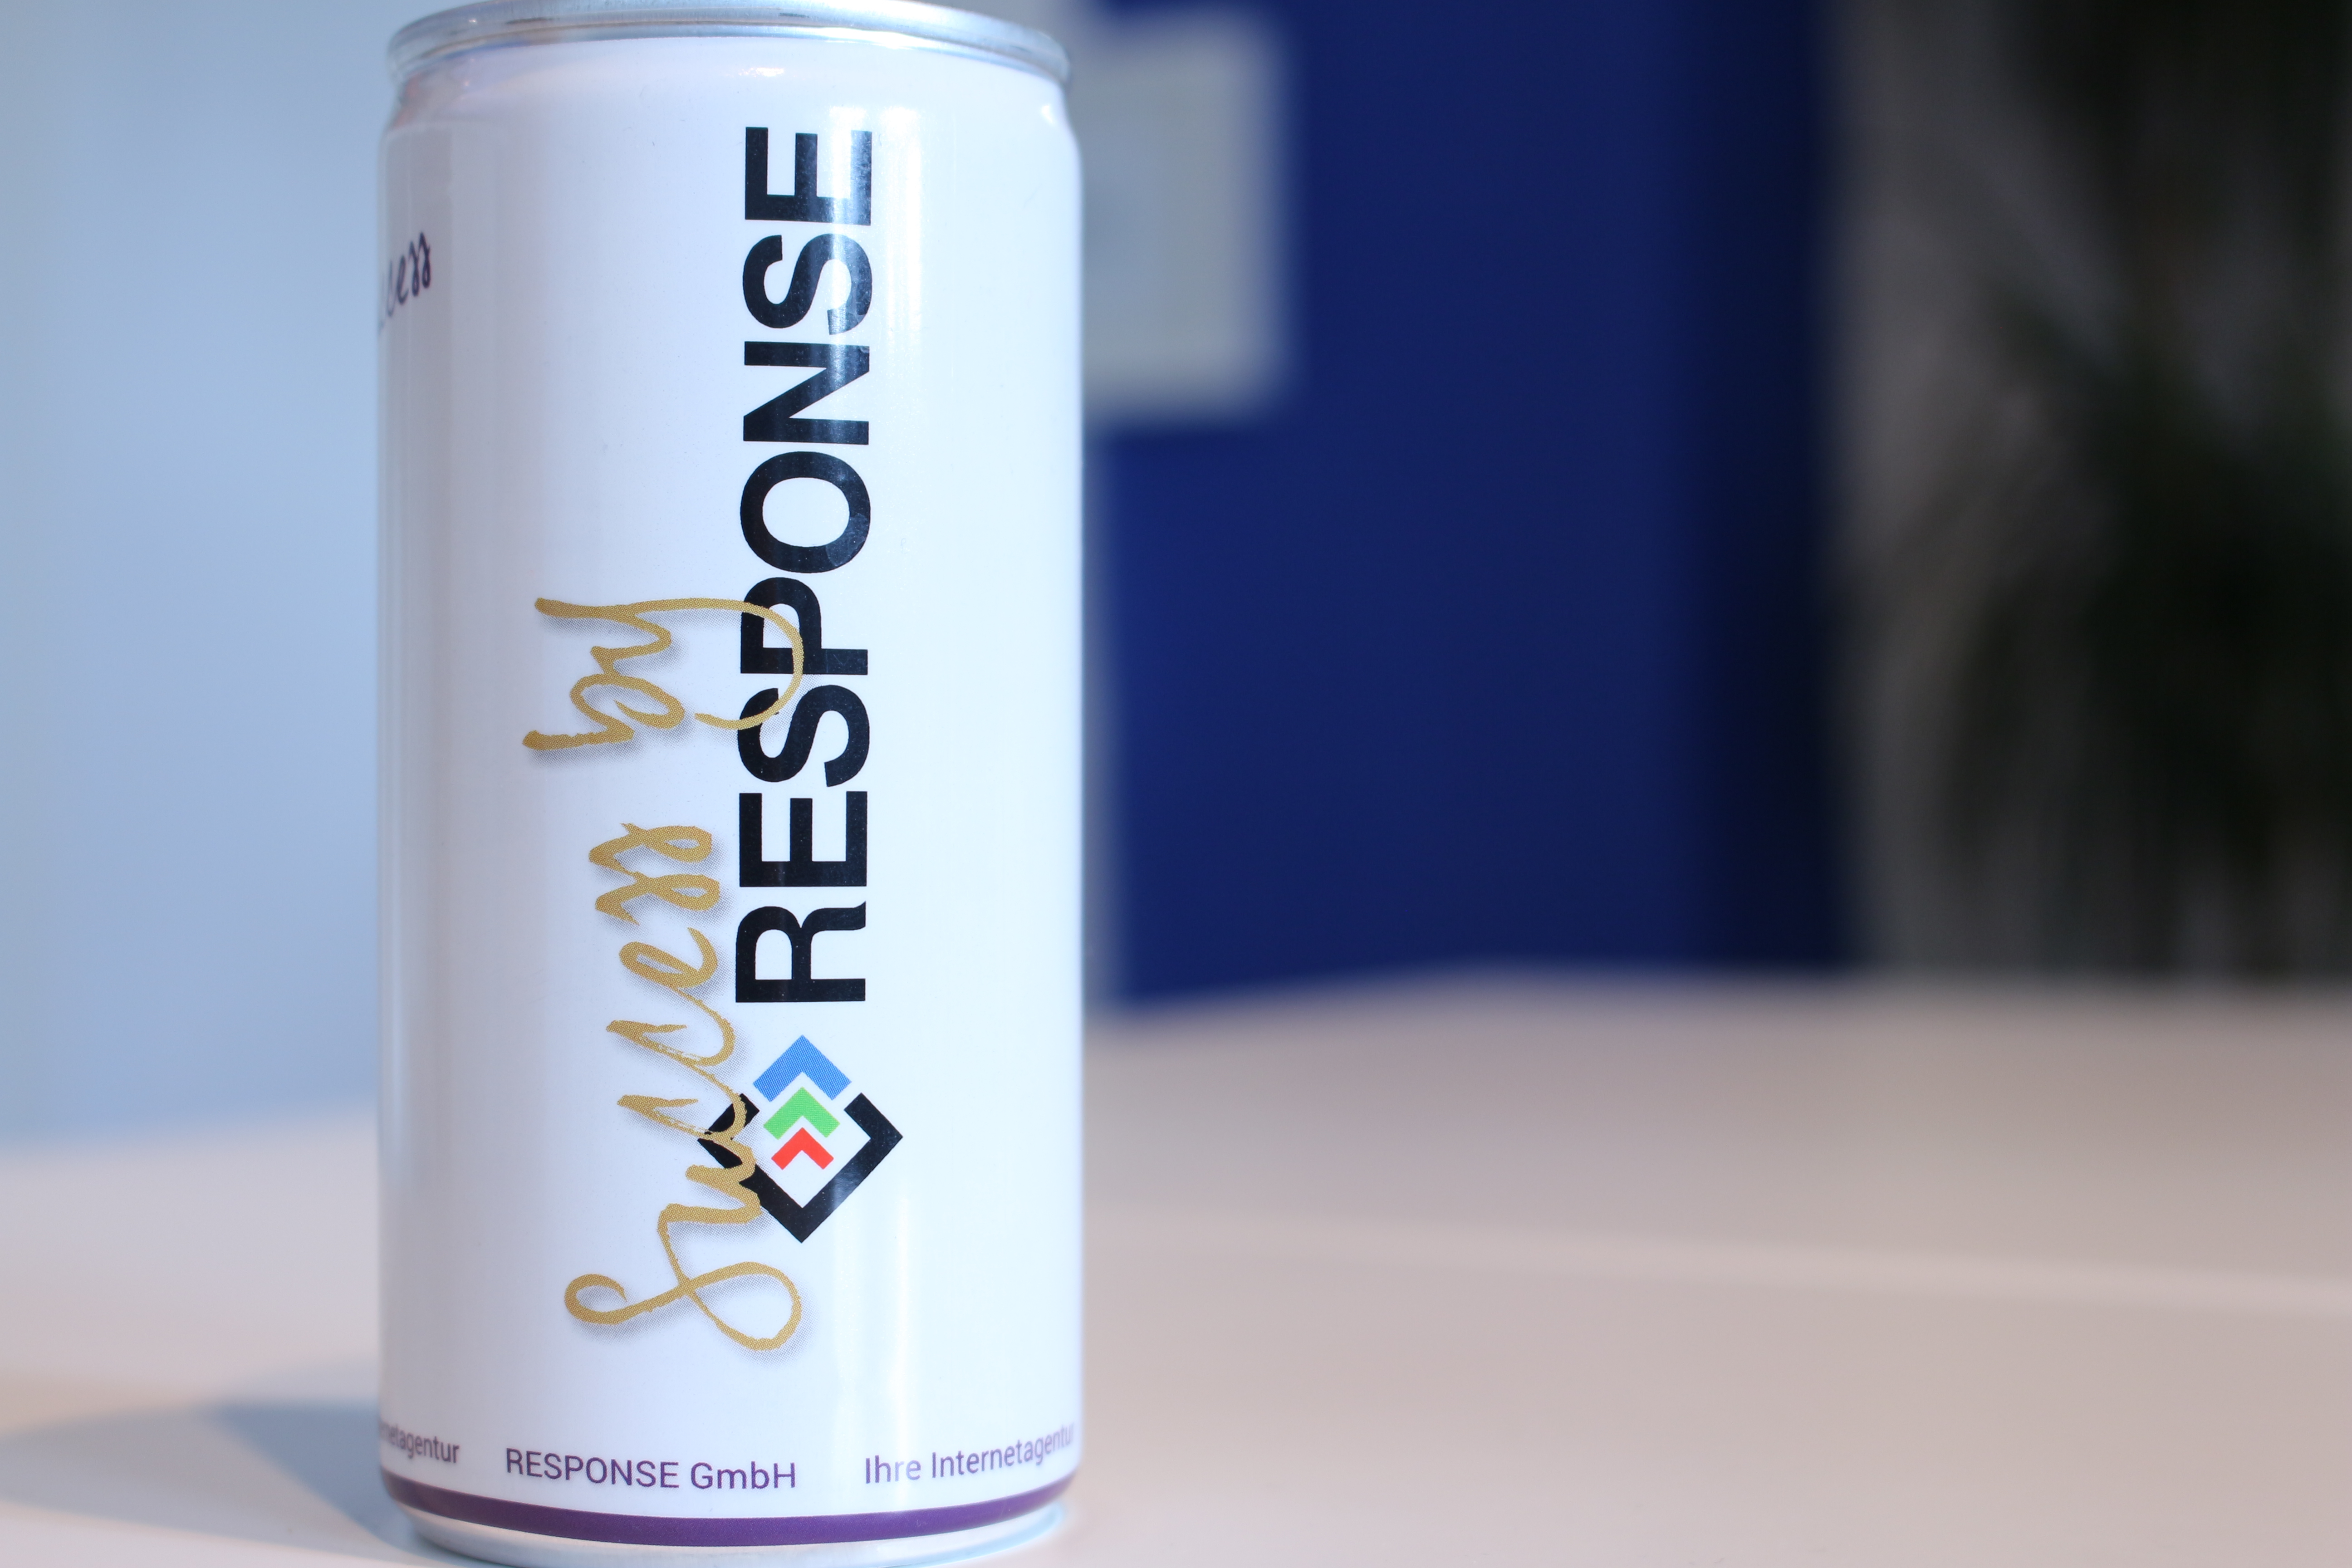 RESPONSE GmbH professionelle Erstellung von Onlineshops